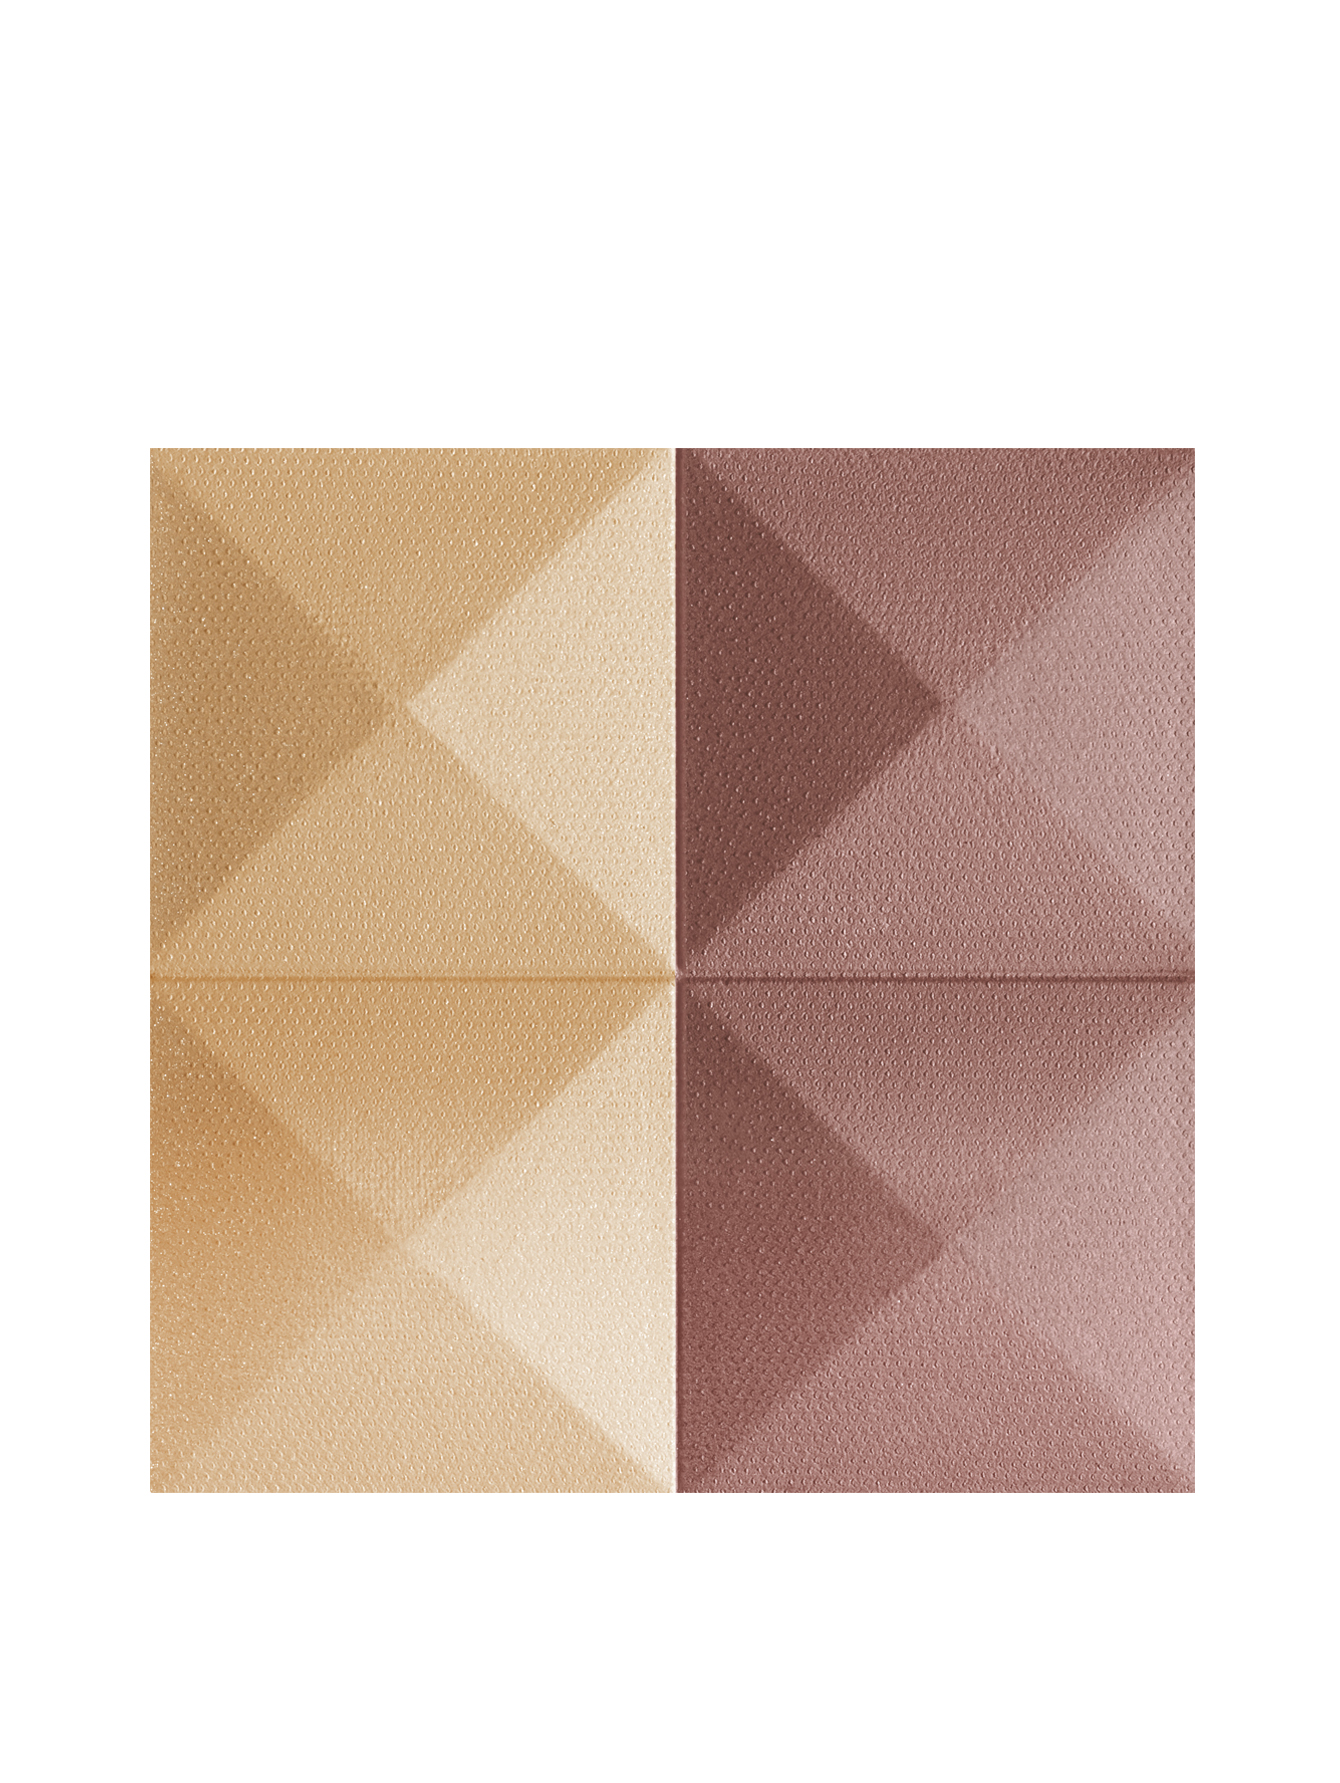 Компактные двухцветные румяна для лица PRISME BLUSH, 07 свобода, 7 г - Обтравка1